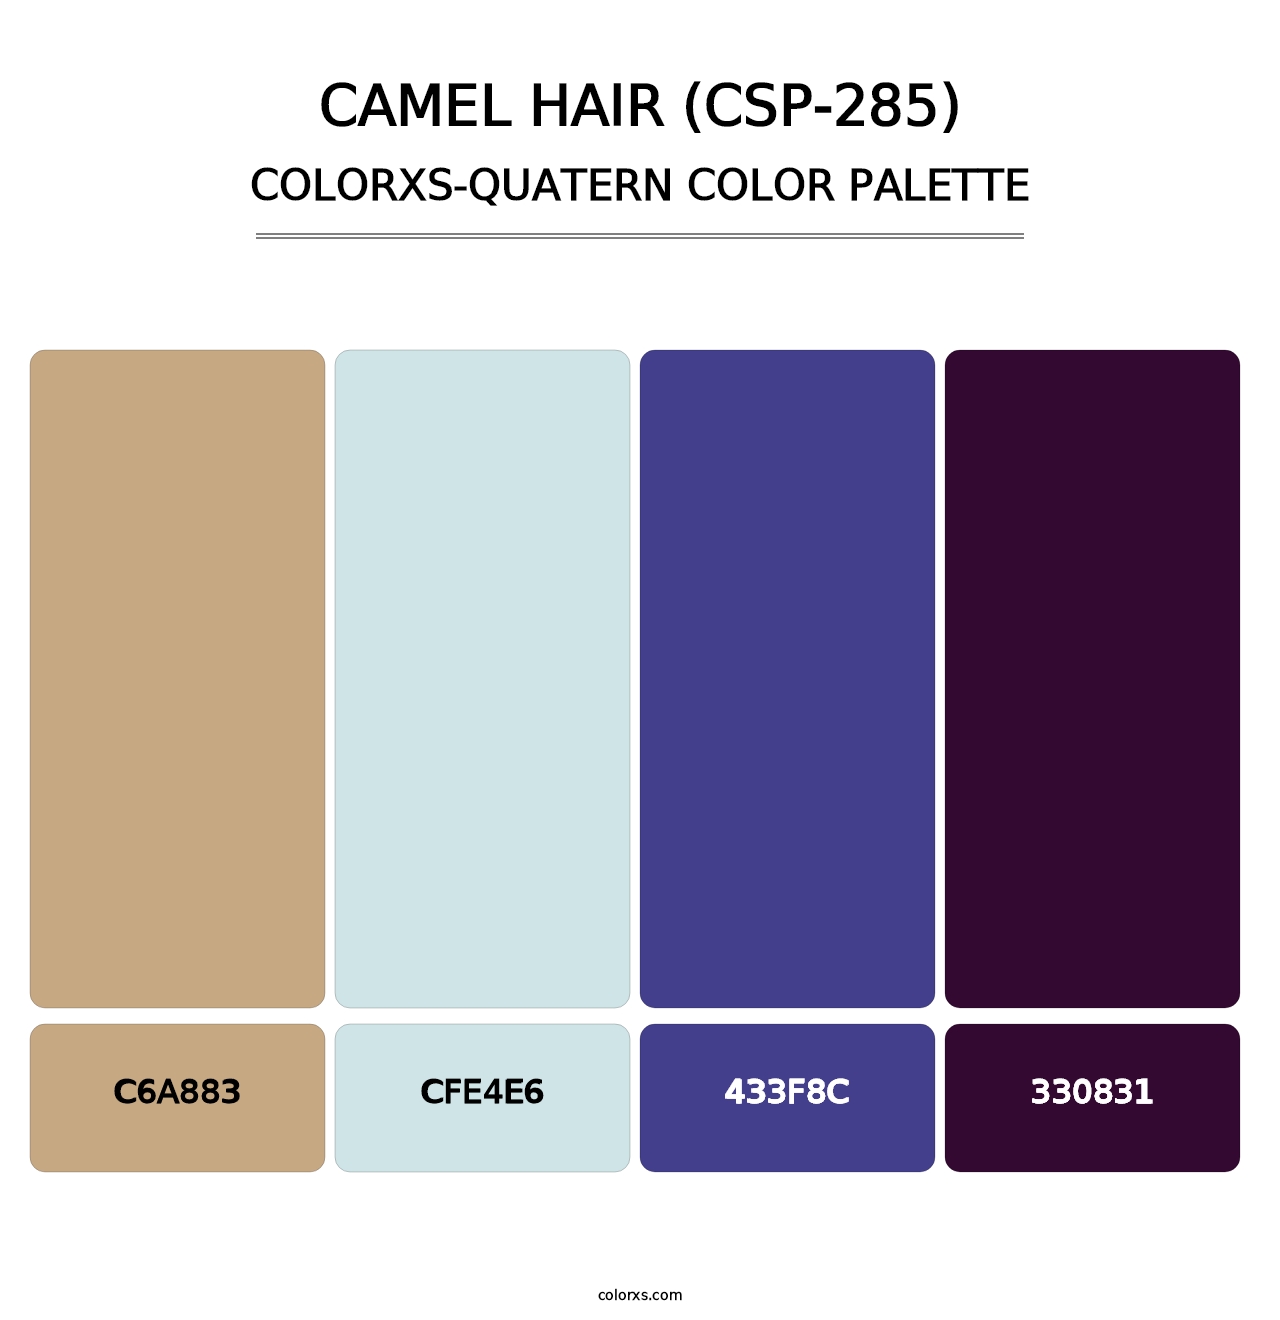 Camel Hair (CSP-285) - Colorxs Quatern Palette